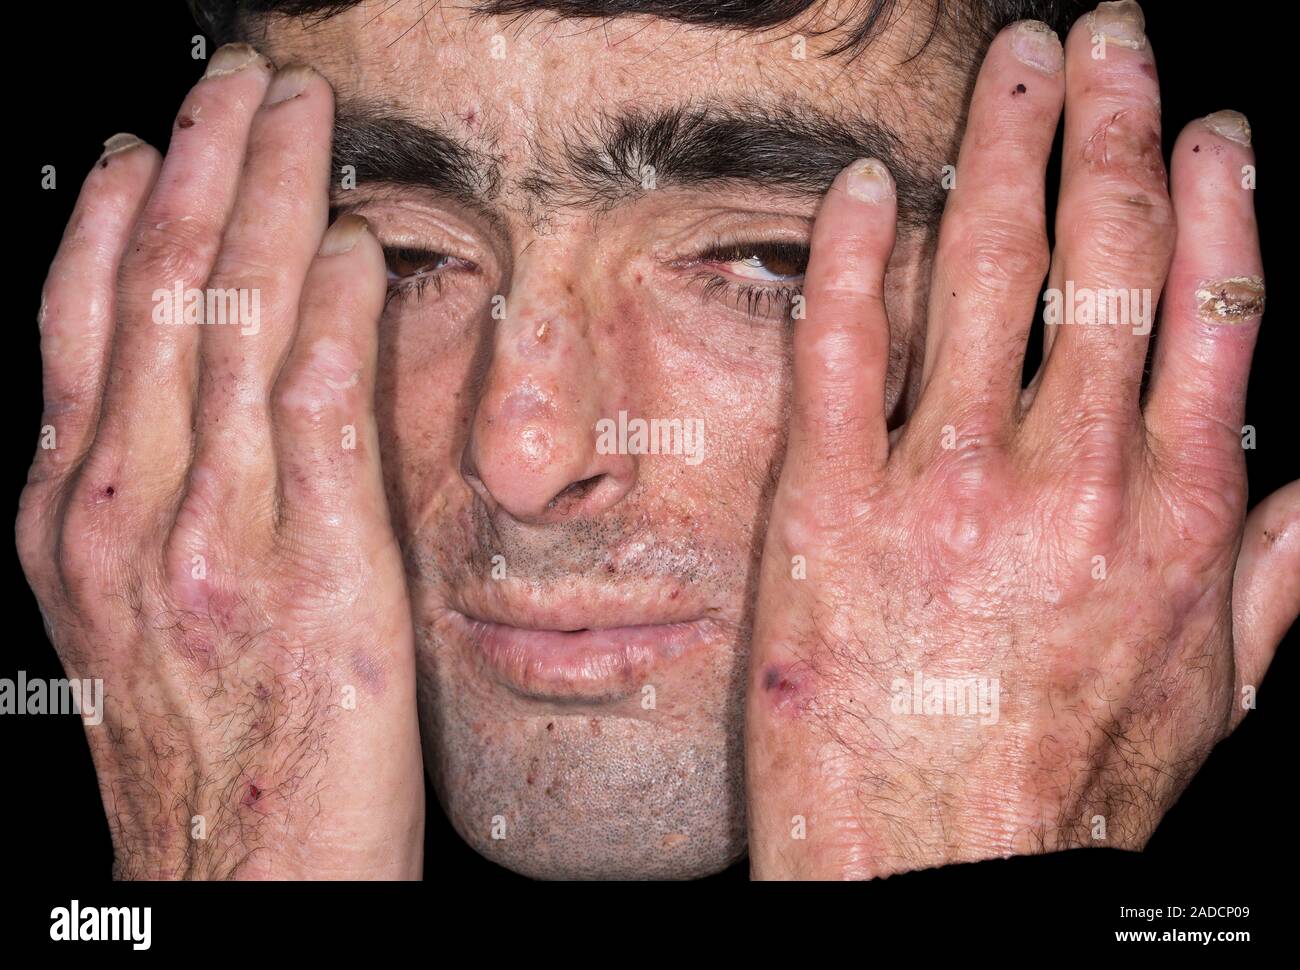 Hände und Gesicht eines männlichen Patienten mit Porphyria Cutanea Tarda (PCT), eine Art von porphyrie. Porphyrie ist der Name für eine Gruppe von Erkrankungen gegeben Stockfoto